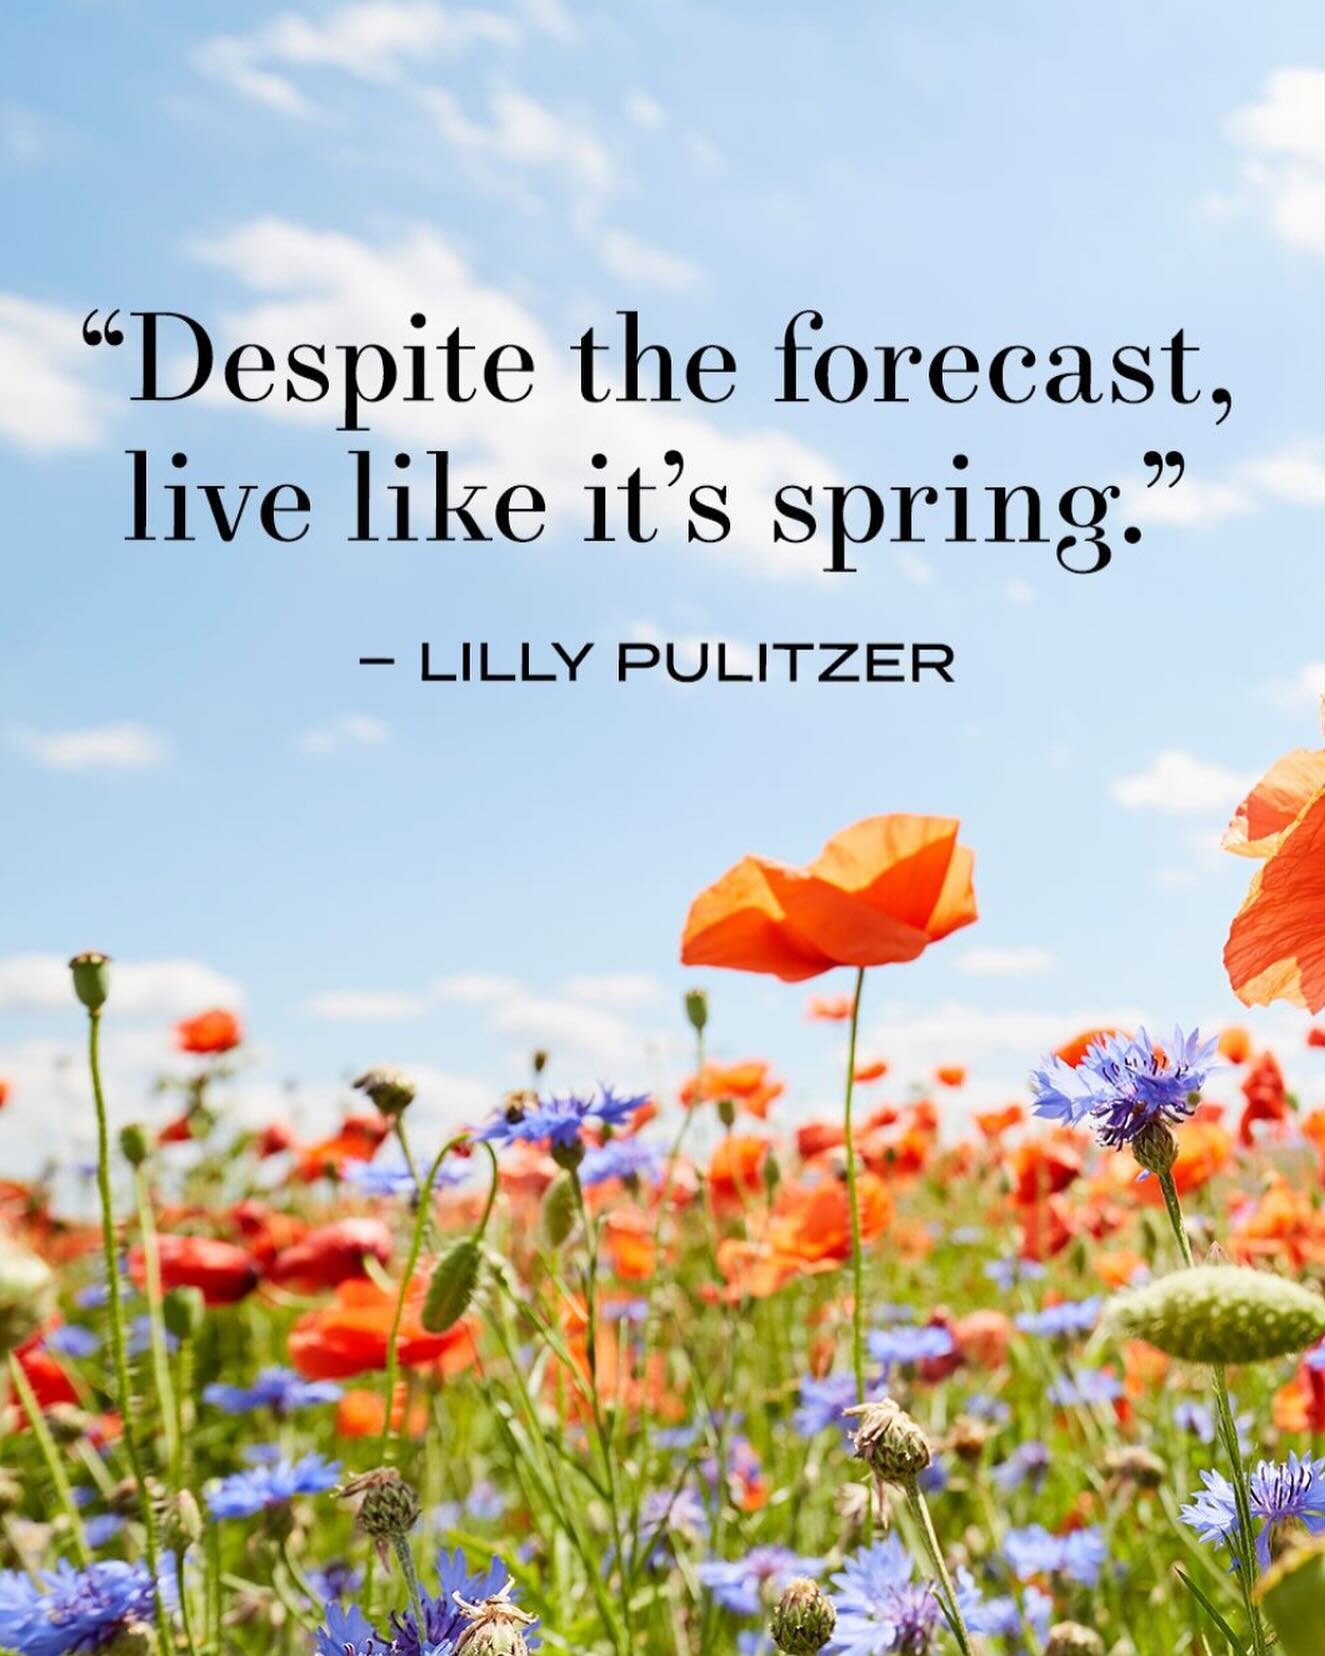 A great reminder!✨☀️✨

#livelikeitsspring #springisonitsway #hopebeneaththesnow